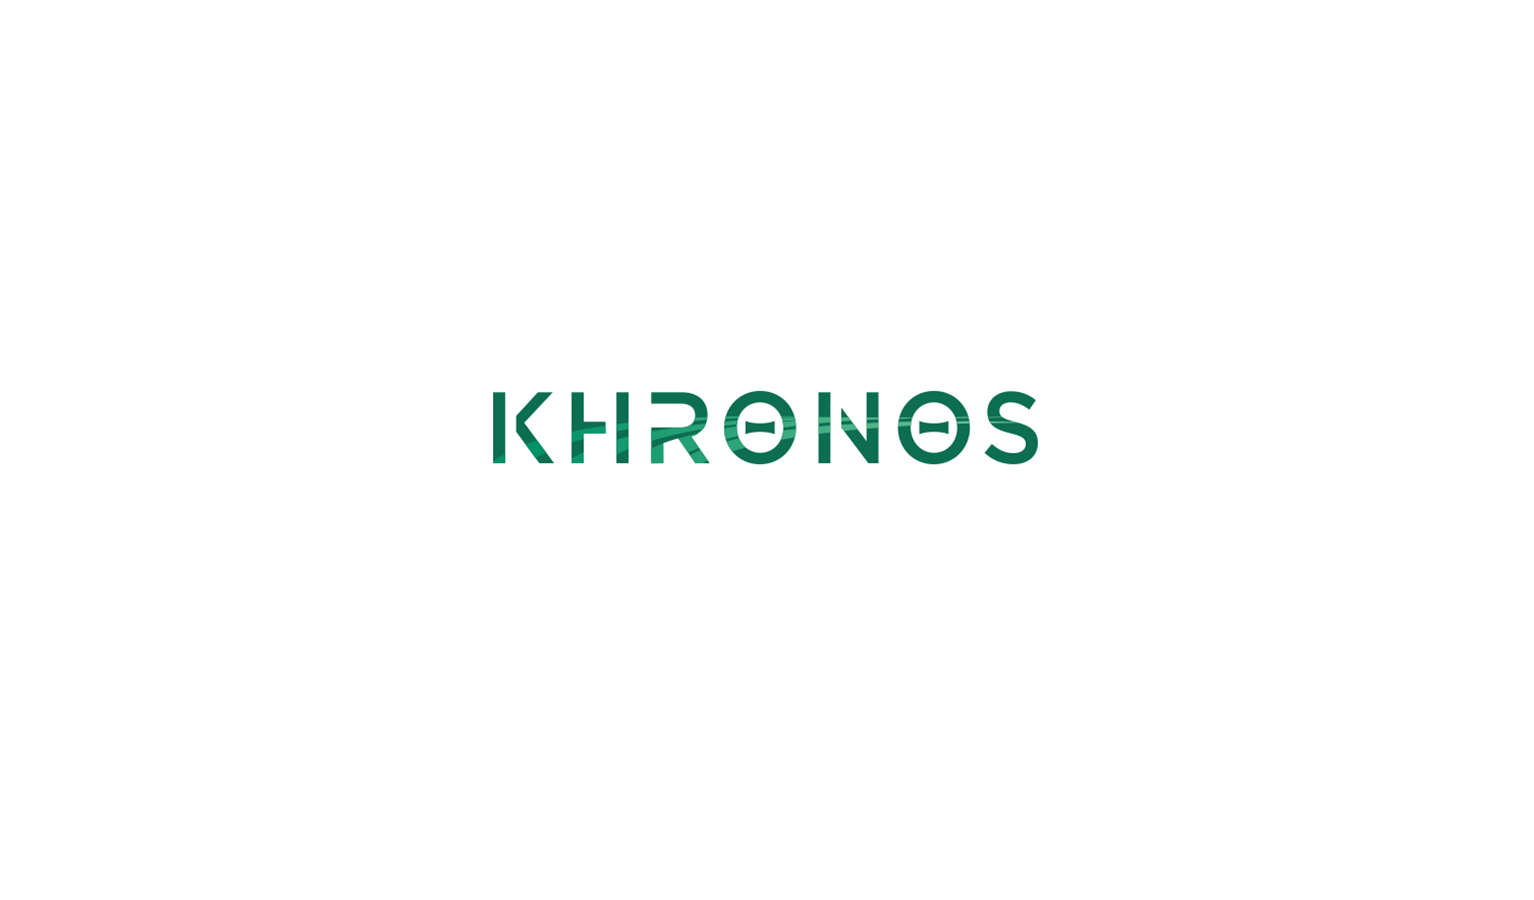 KOS Design - Khronos